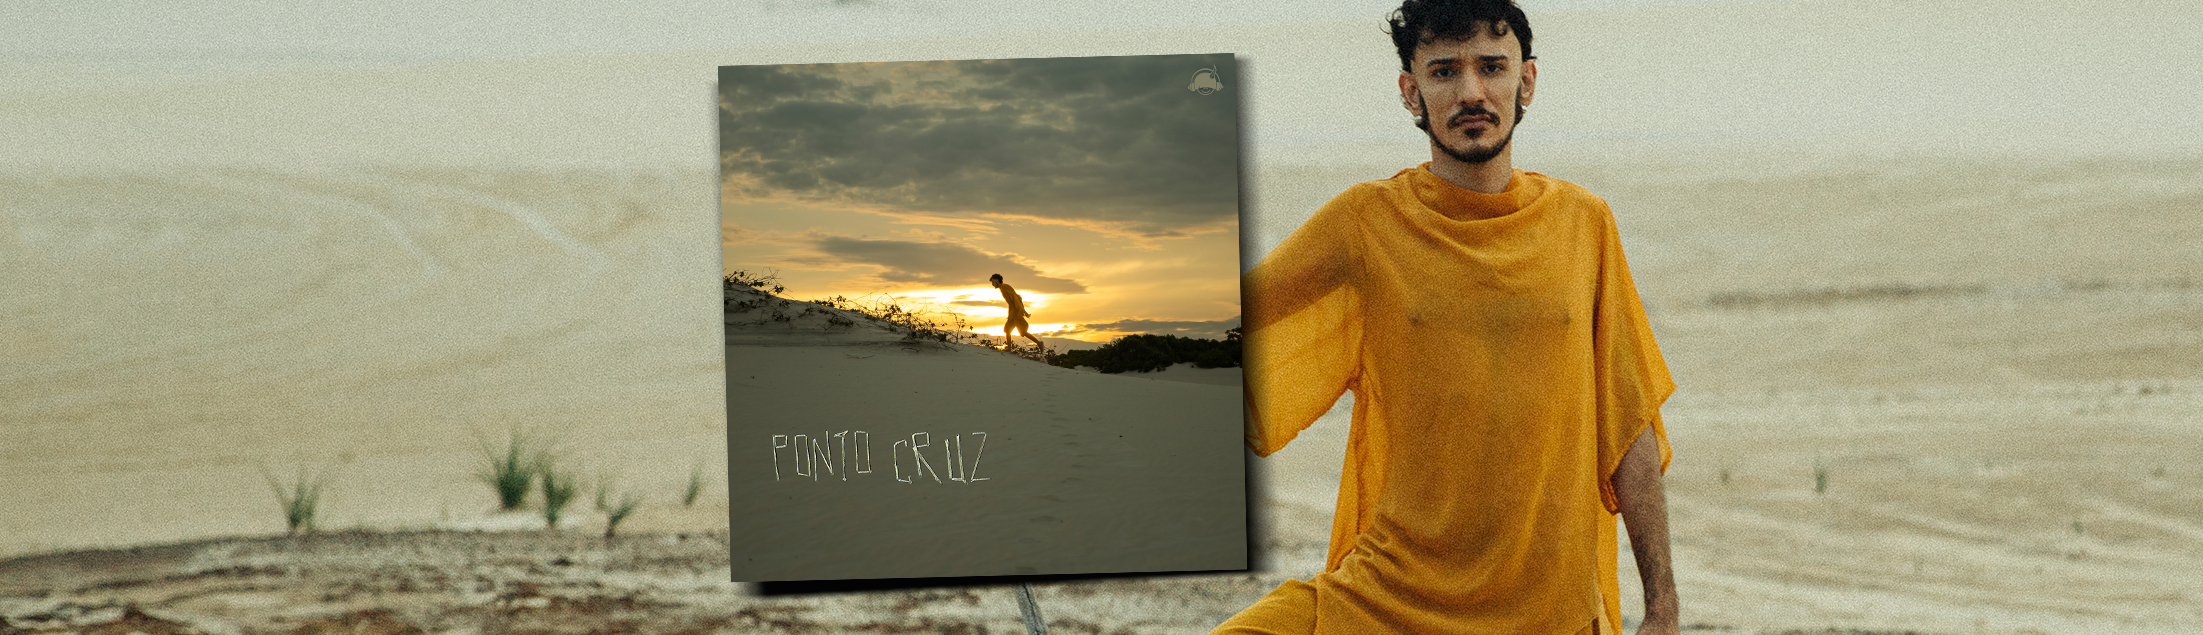 Lucas Fidelis lança o single 'Ponto Cruz'